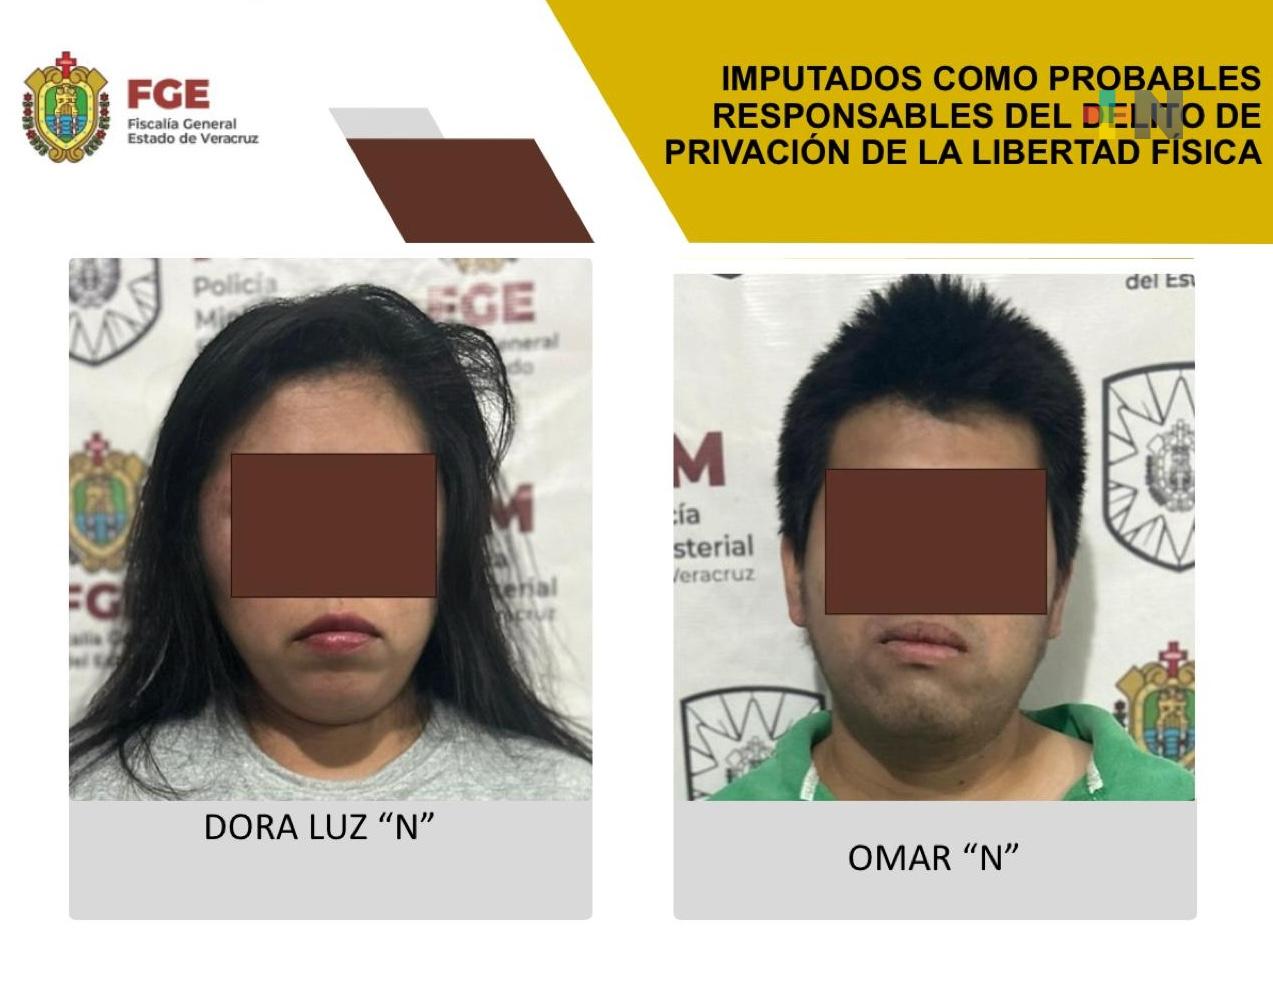 Dora Luz “N” y  Omar “N” imputados como probables responsables de privación de la libertad física